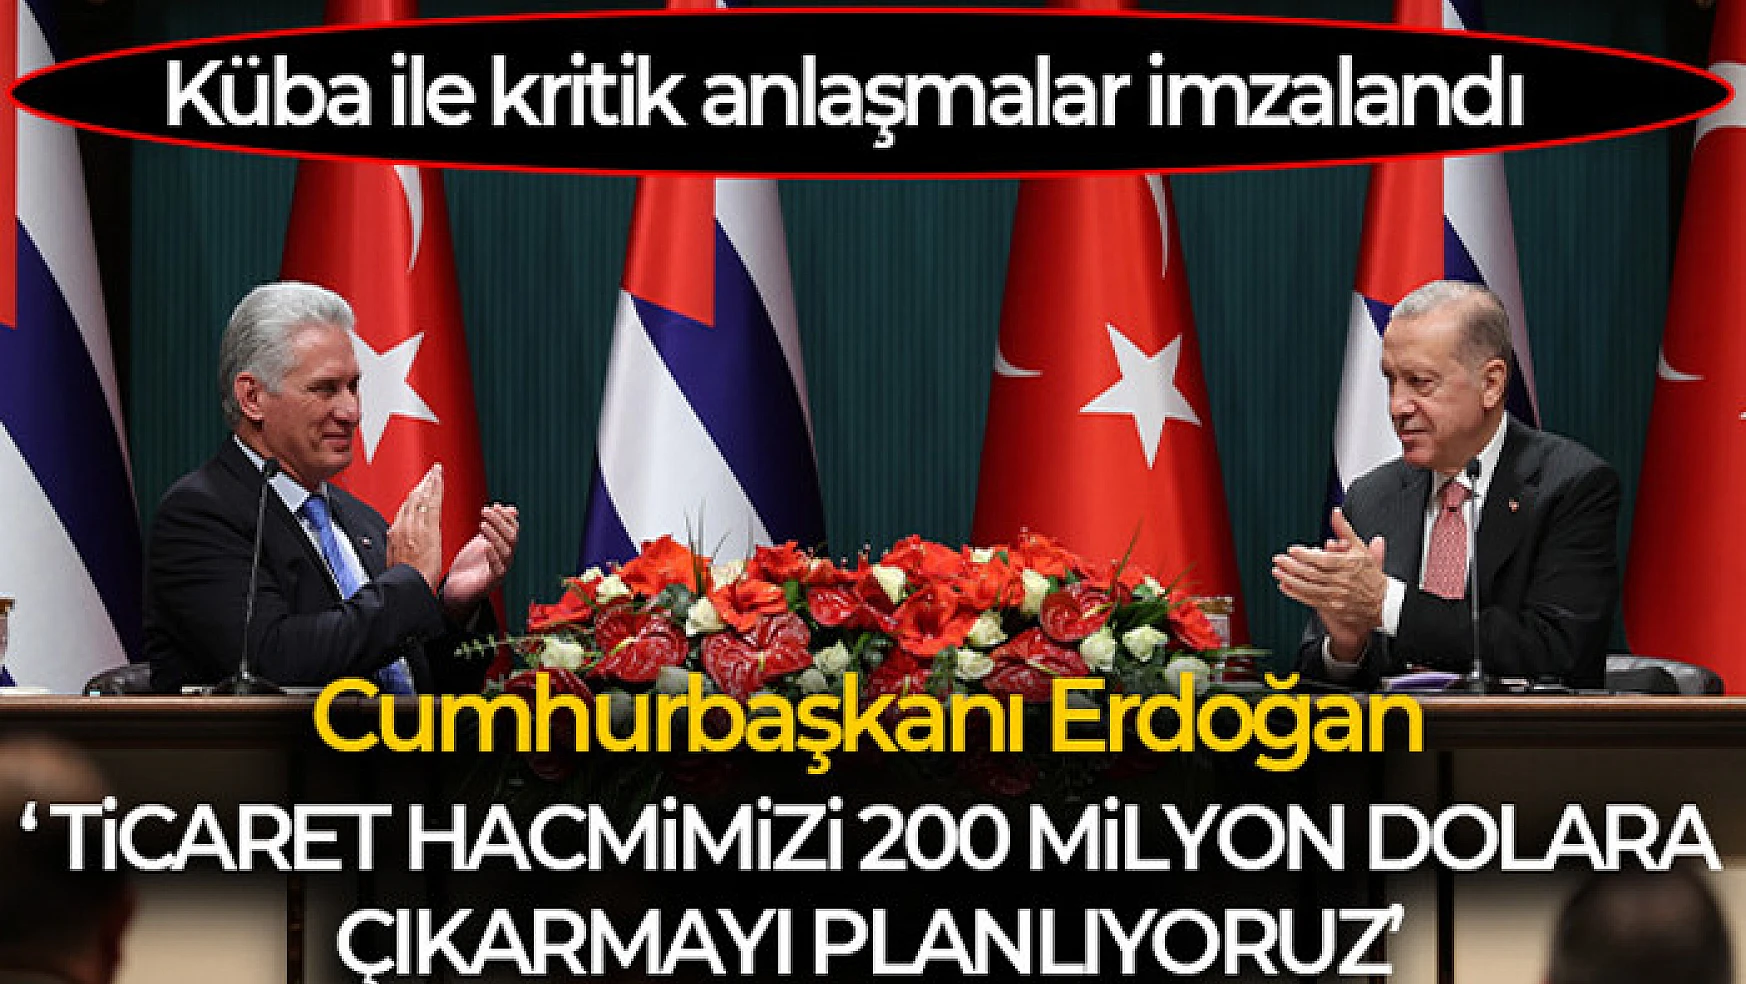 Cumhurbaşkanı Erdoğan: 'Küba ile ticaret hacmimizi 200 milyon dolara çıkarma kararlılığımızı teyit ettik'